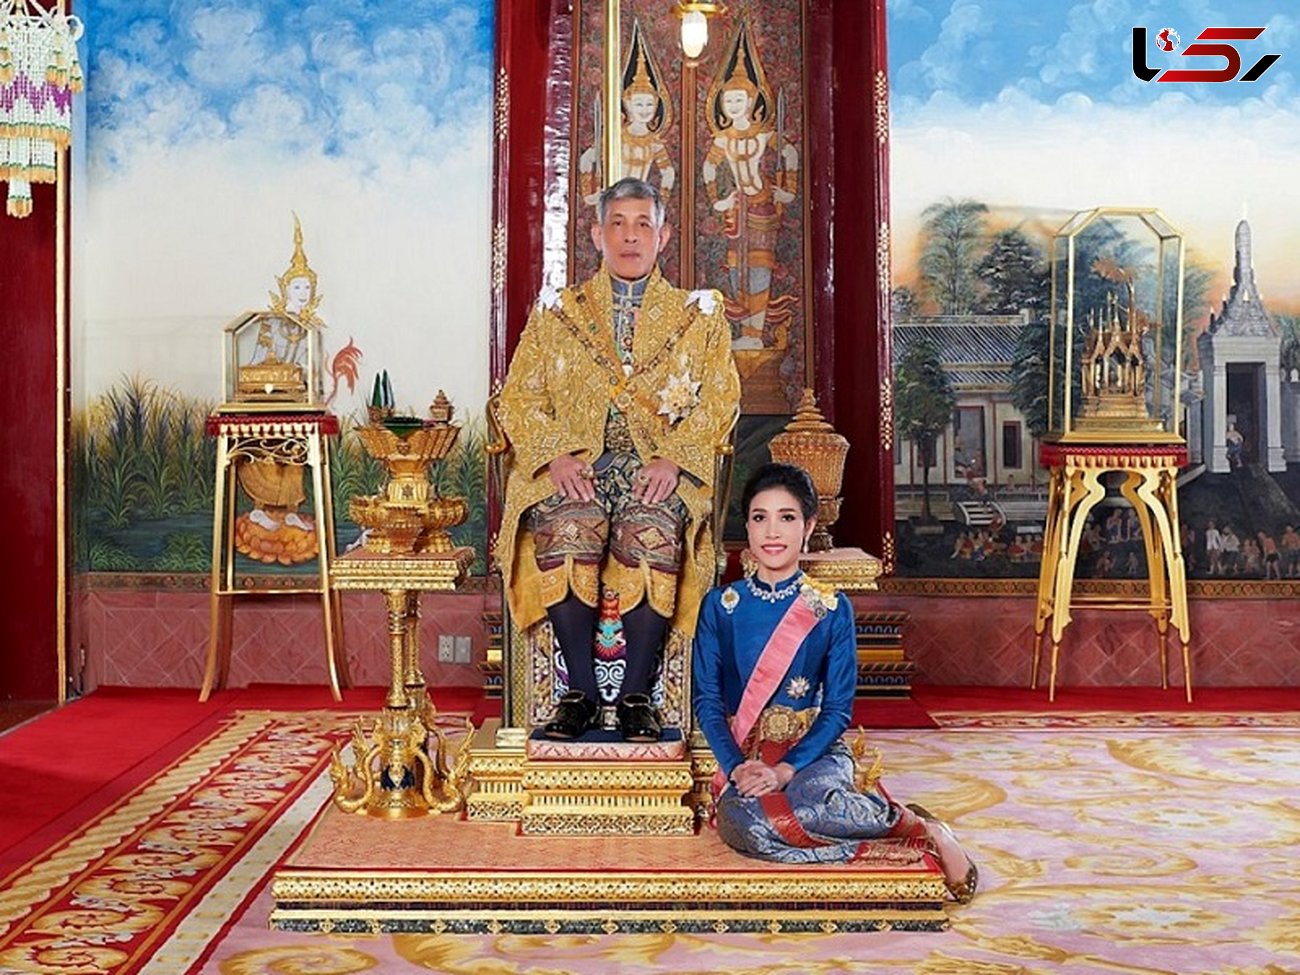 ازدواج مرموز پادشاه تایلند + عکس های دیدنی